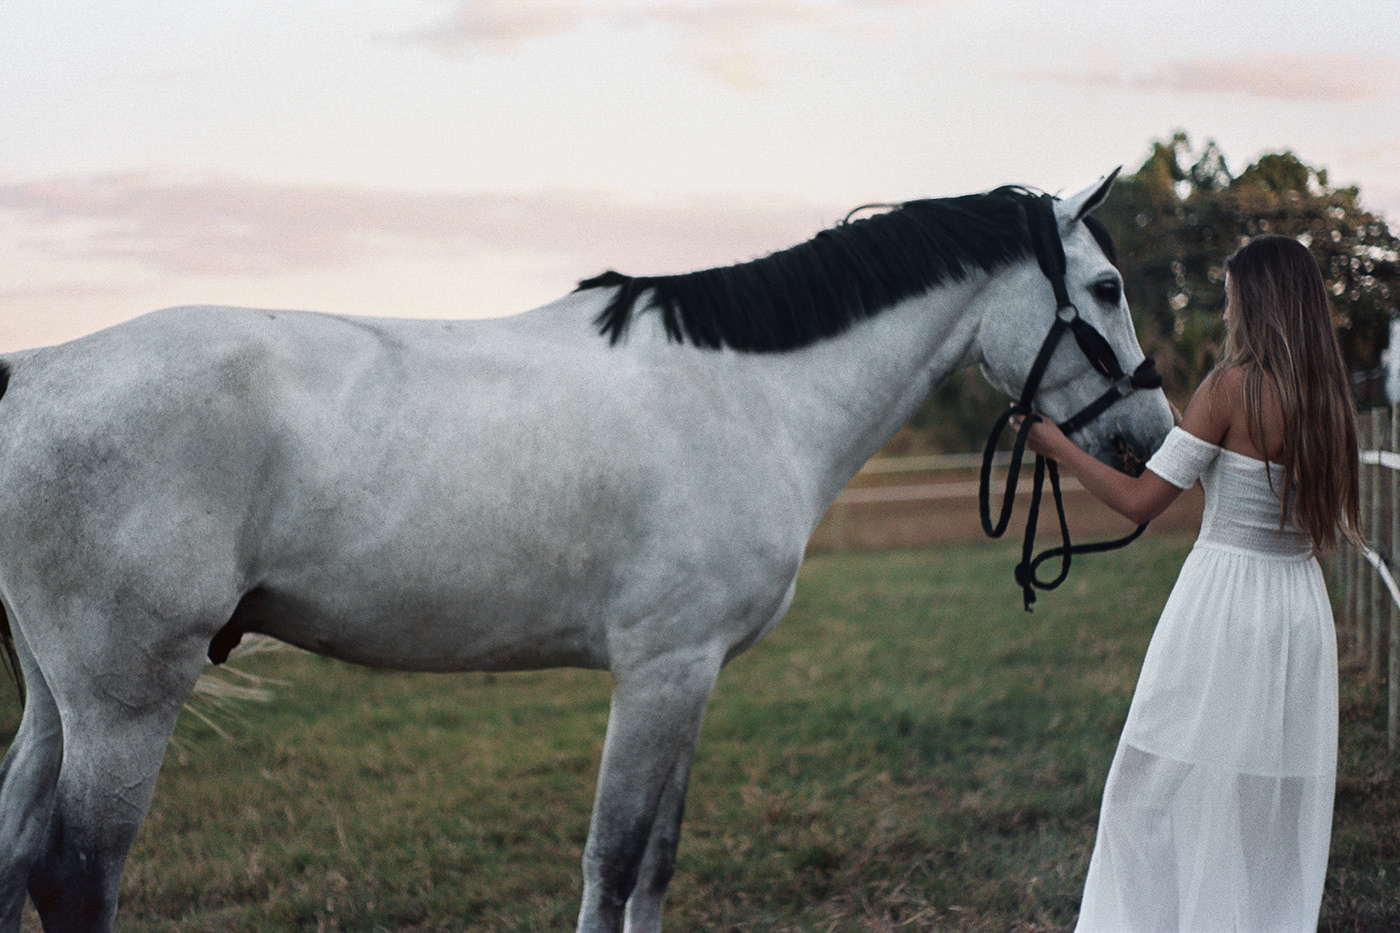 35mm analogic girl girls horse photoshoot